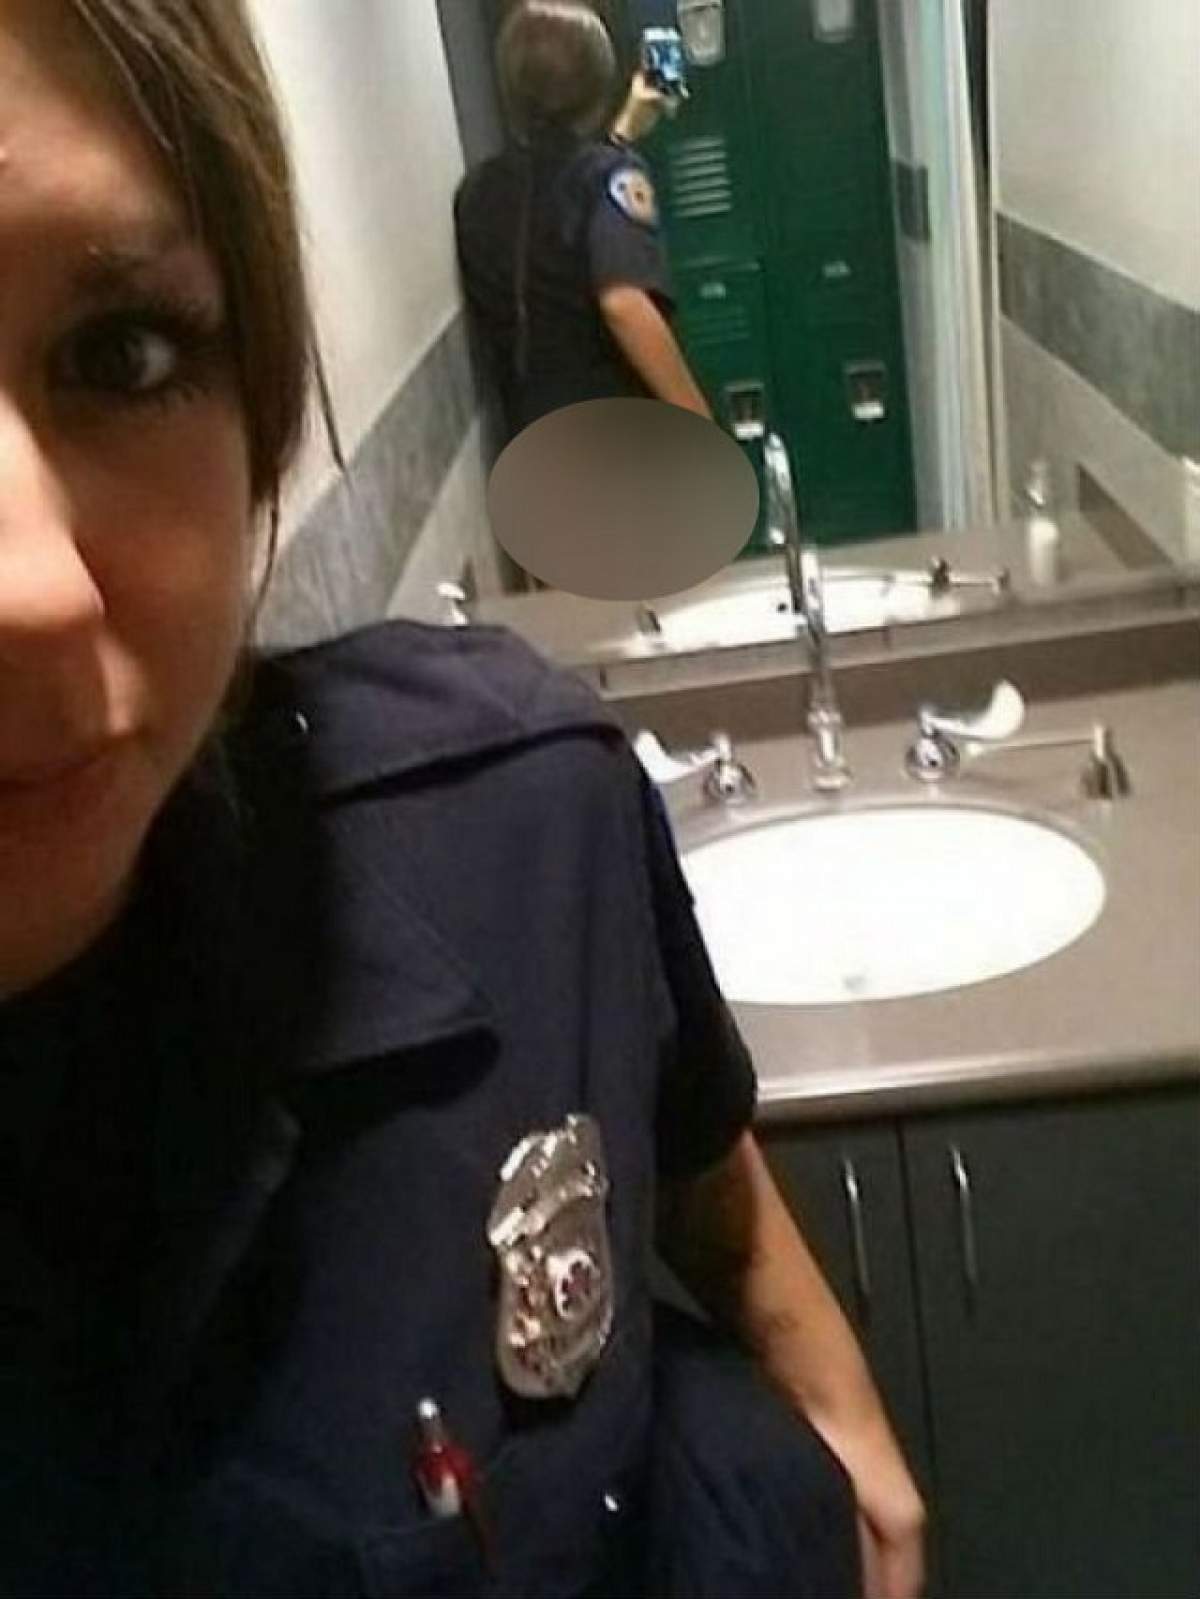 Poliţista asta şi-a făcut un "selfie", dar ce s-a văzut în oglinda din spate "i-ar putea semna" demisia!